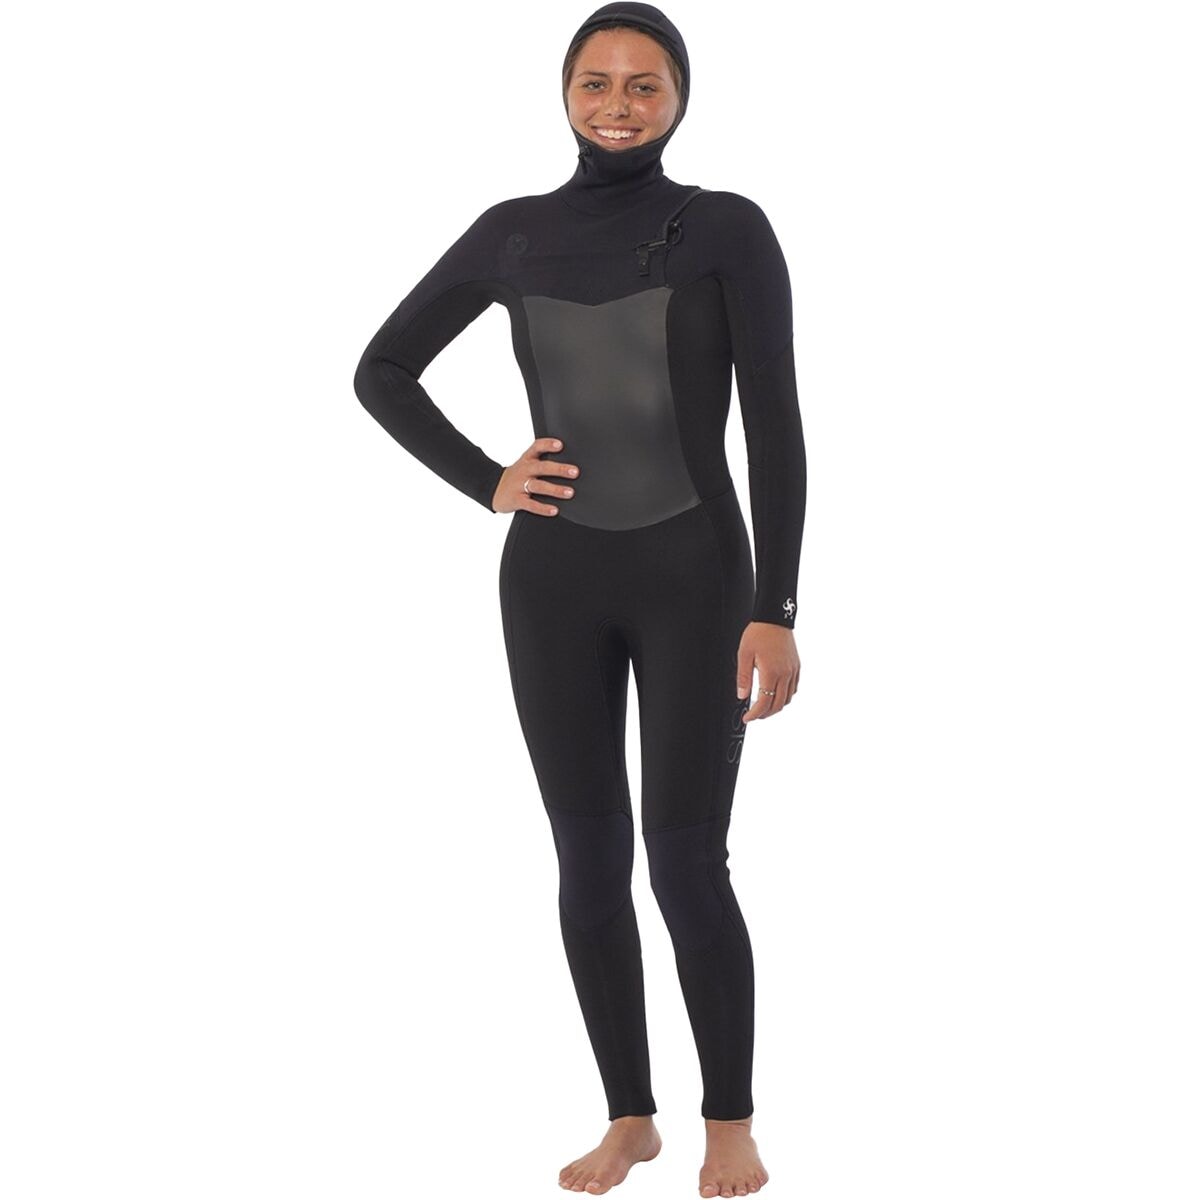 Sisstr Revolution 7 Seas 5/4mm Hooded Chest Zip Full Wetsuit - Women's